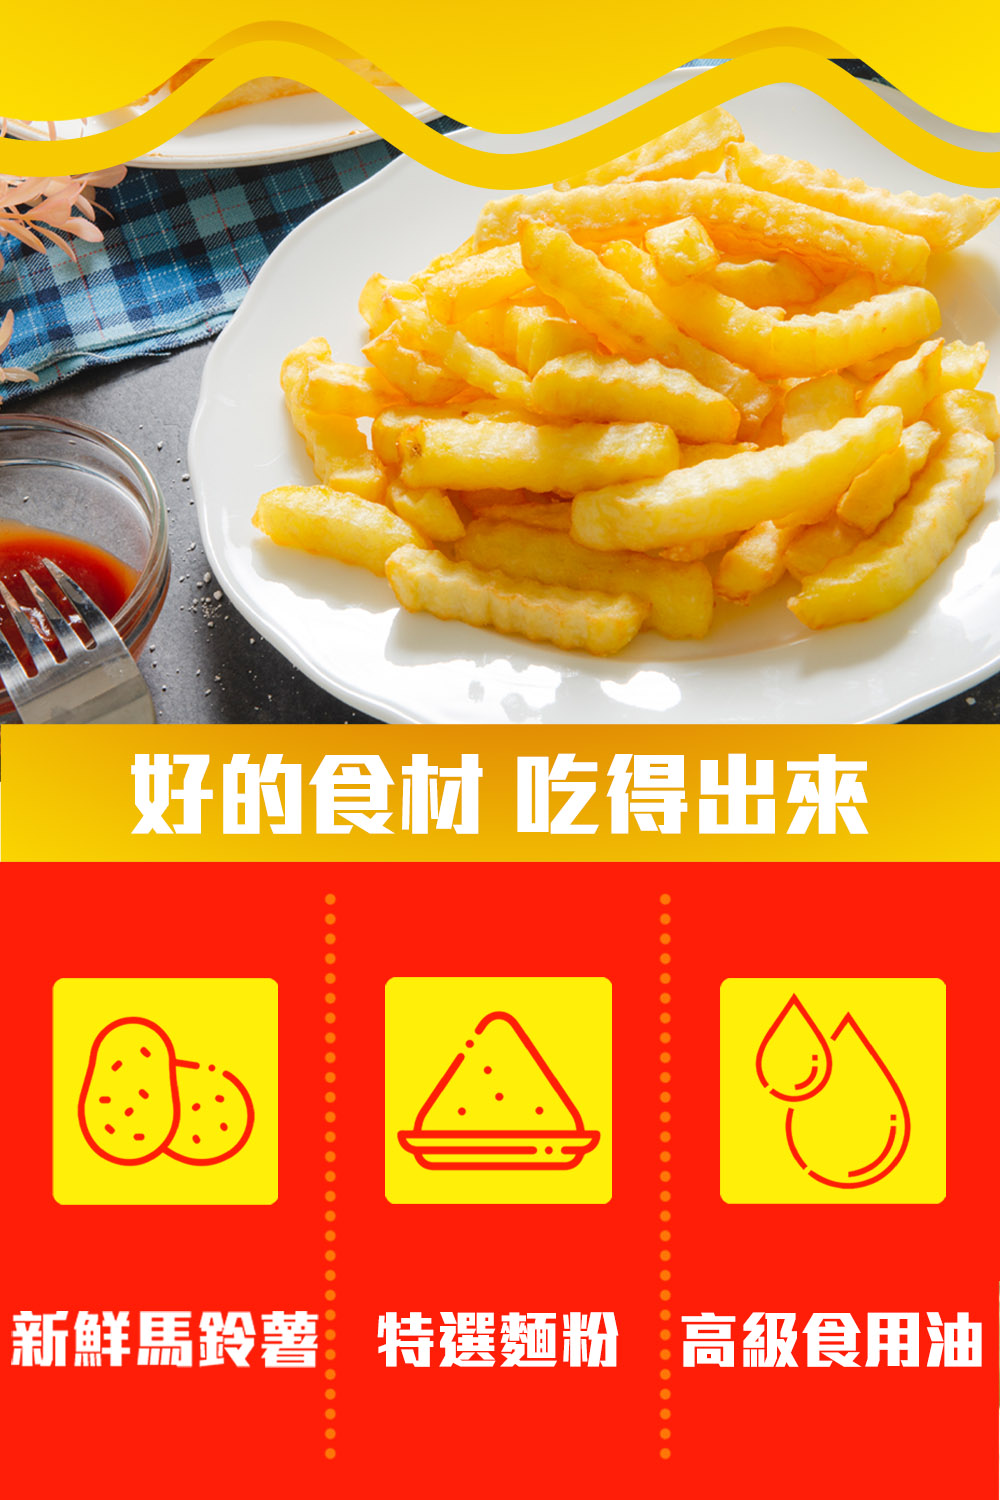       【鮮綠生活】金黃波浪薯條(300g/包 共12包)